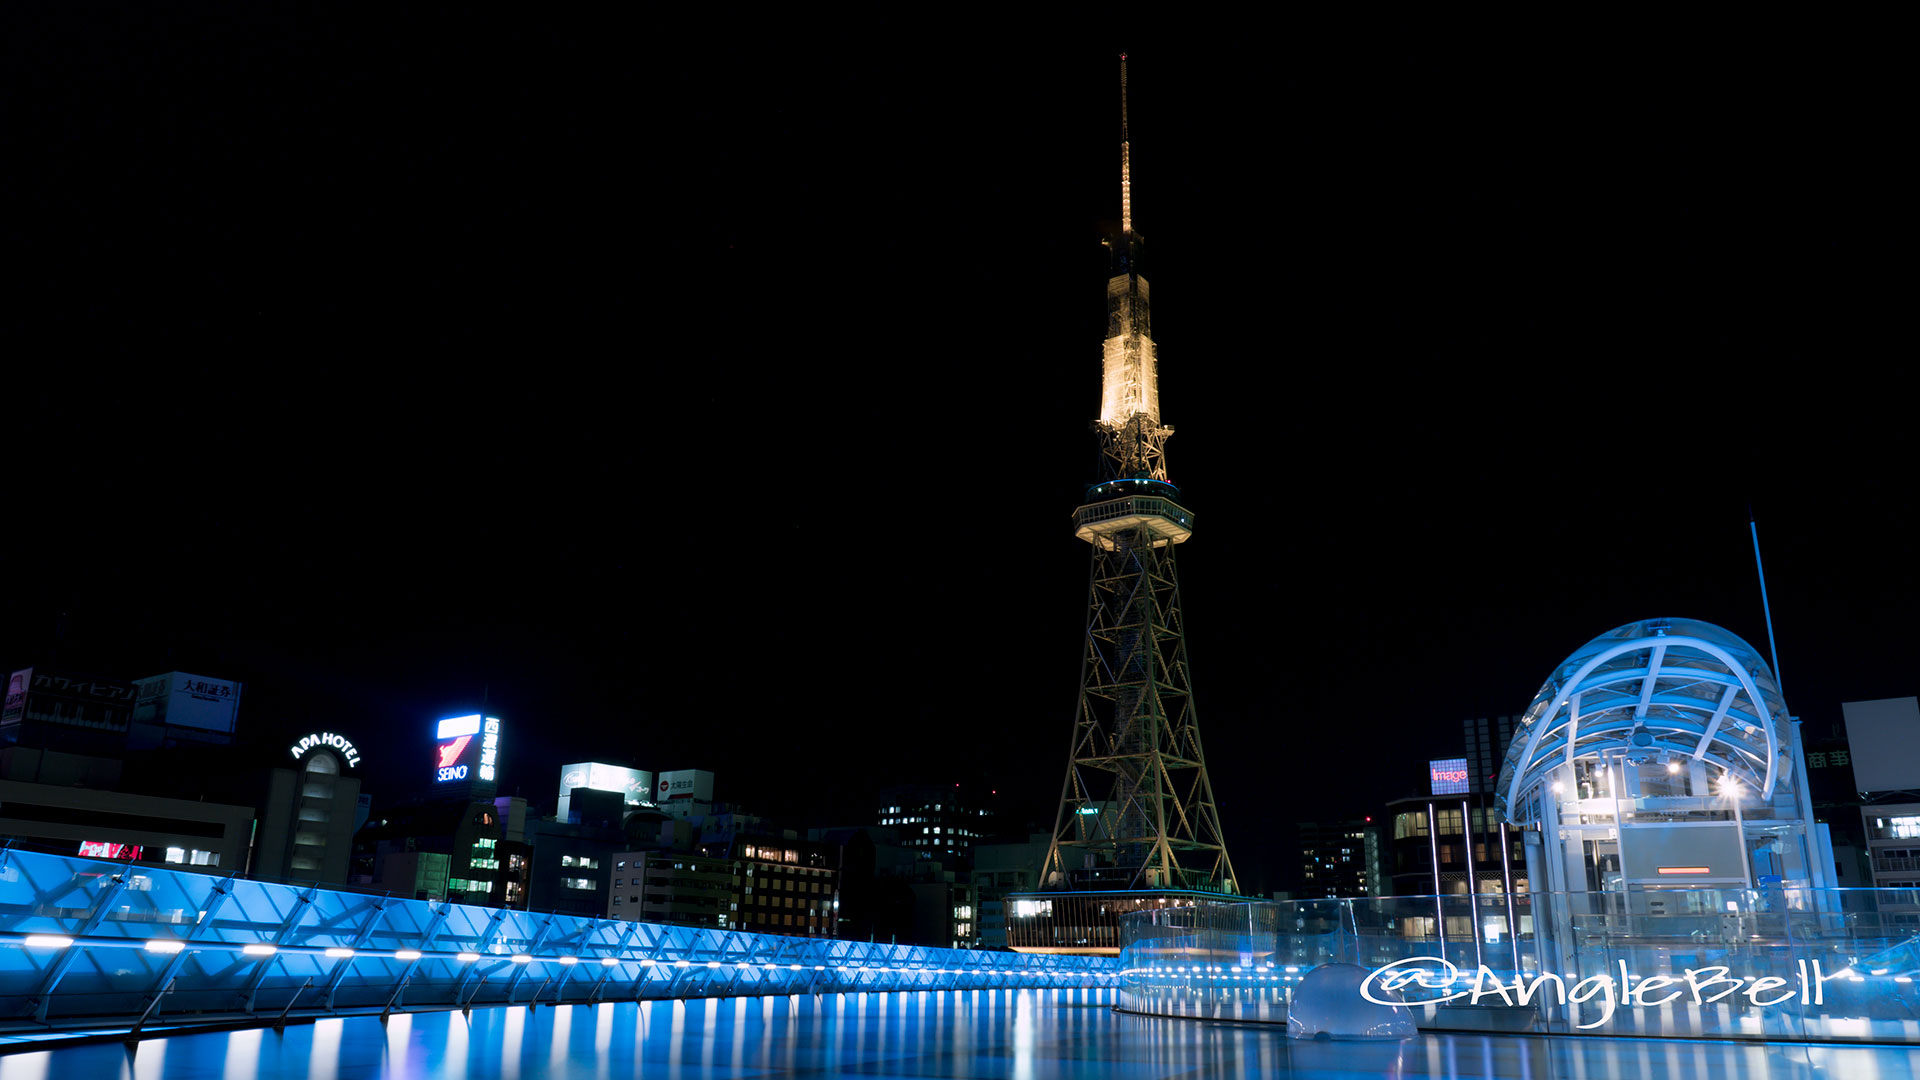 オアシス21 「水の宇宙船」と名古屋テレビ塔